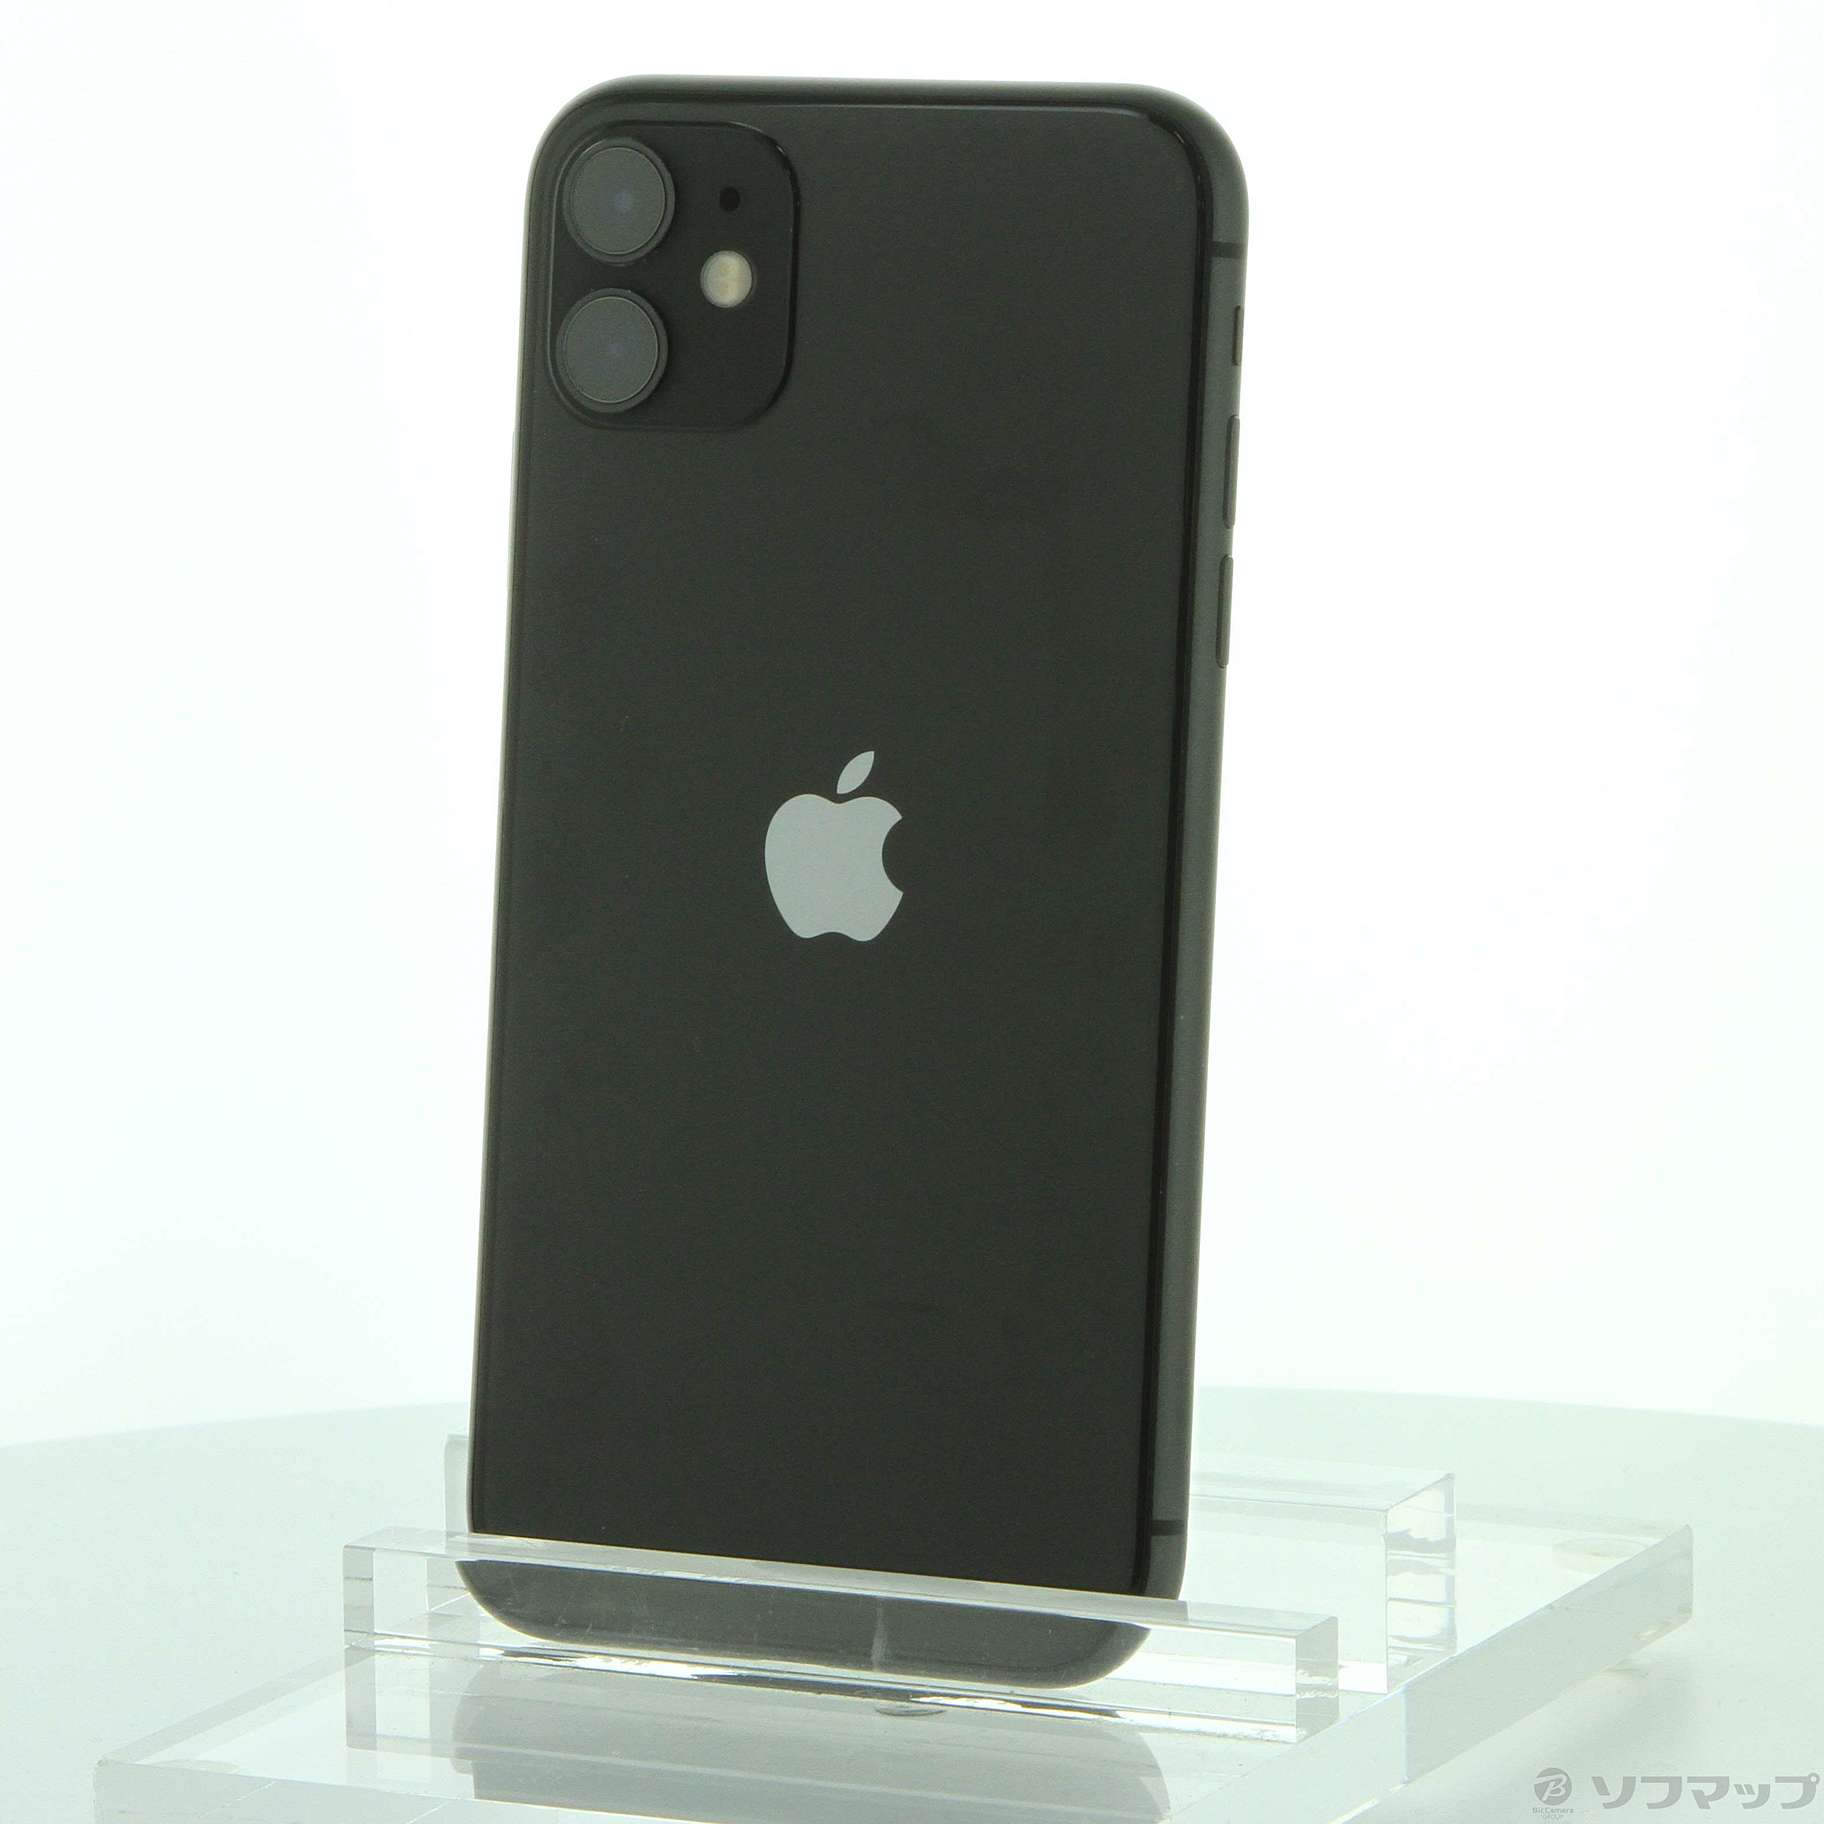 iPhone11 ブラック 64GB SIMフリー25000¥でどうですか 